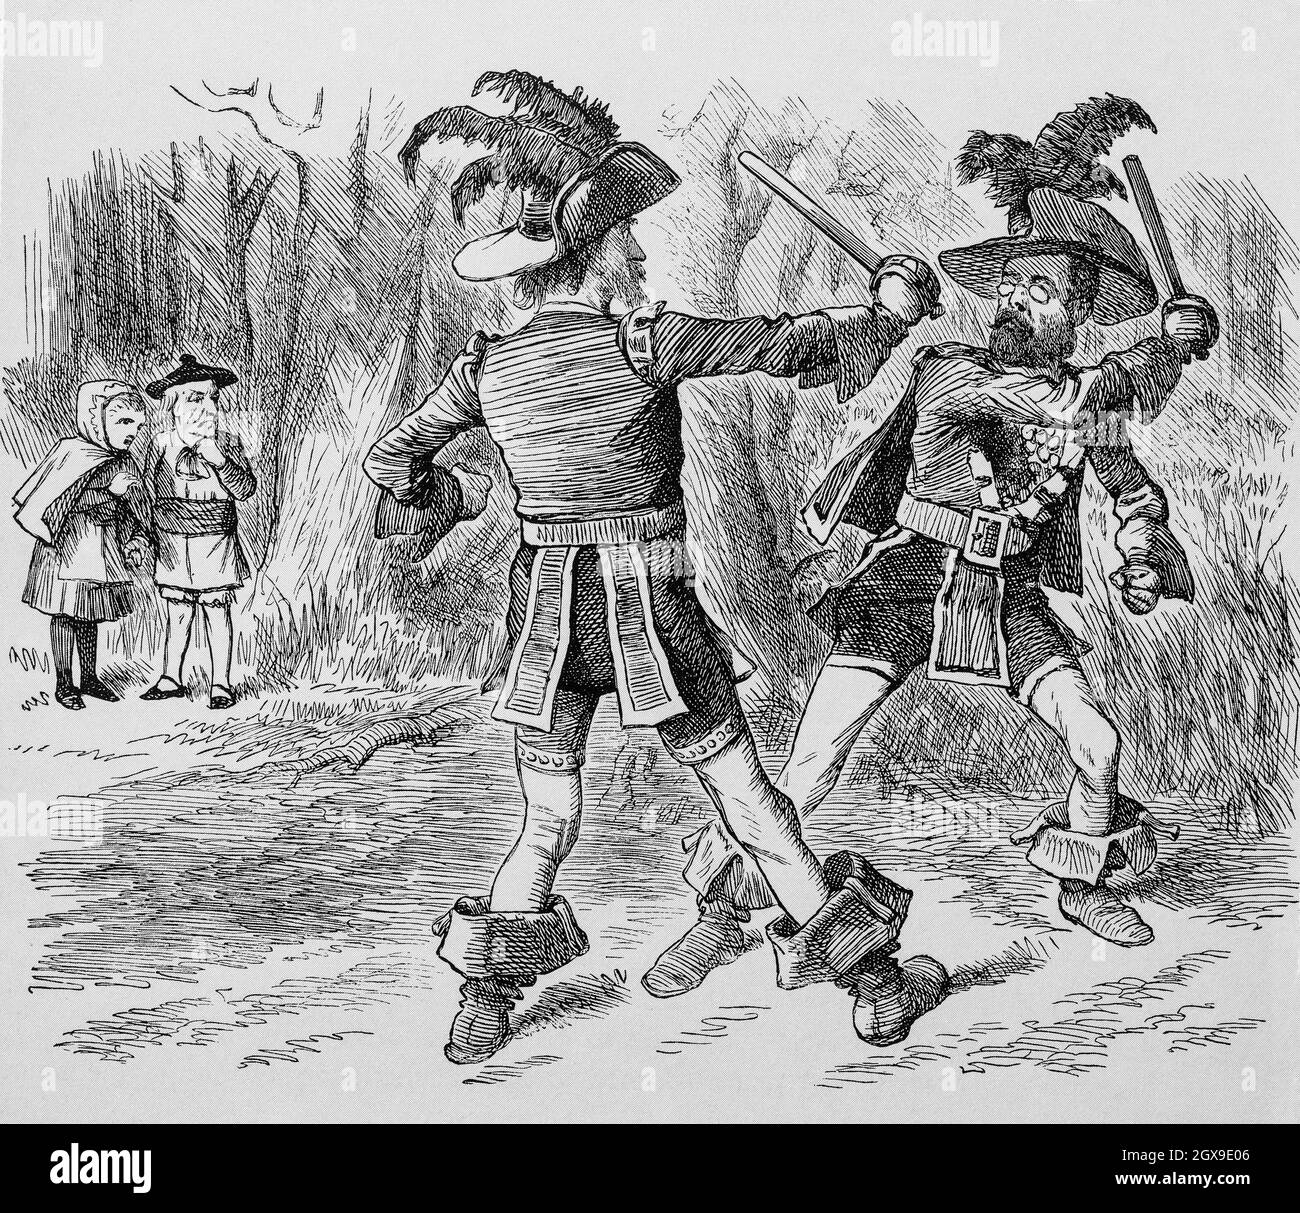 Eine Punch-Karikatur des Duells mit (links) Charles Stewart Parnell (1846-1891), einem irisch-nationalistischen Politiker, der als Mitglied des Parlaments von 1880 bis 1882 als Anführer der Home Rule League und dann von 1882 bis 1891 als Vorsitzender der irischen Parlamentarischen Partei fungierte. Seine Partei hielt das Machtgleichgewicht im Unterhaus während der Debatten über die Regeln der Heimat von 1885 bis 1886. Rechts ist Tim Healy, auch ein irischer nationalistischer Politiker, der zunächst ein leidenschaftlicher Anhänger von Parnell war, und nach Ereignissen, die Parnell in seiner Beziehung zu Katharine O'Shea umgaben, von seinem Führer enttäuscht wurde. Stockfoto